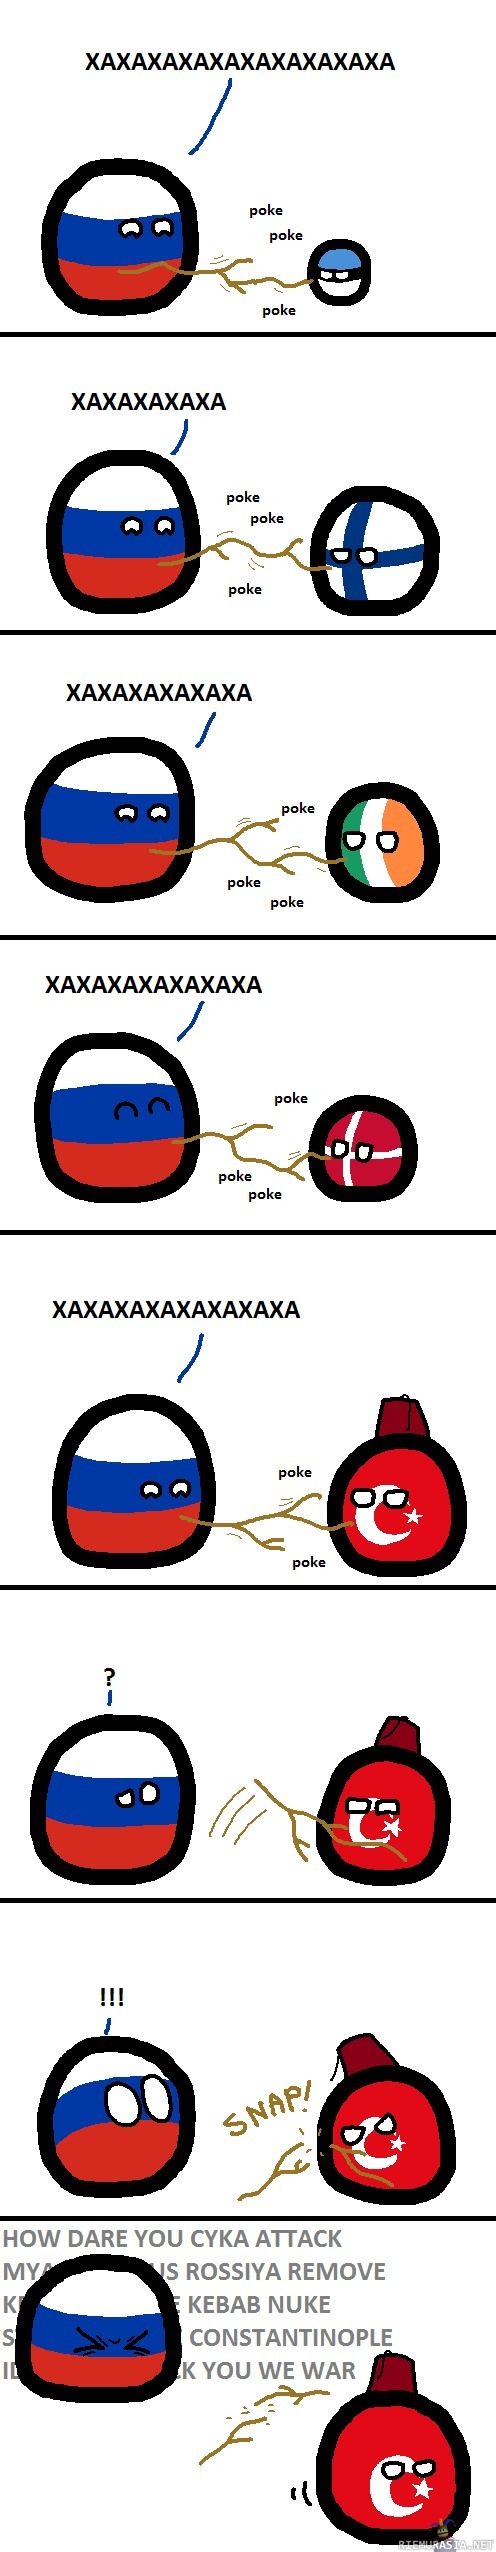 Turkki ja Venäjä - Ajankohtainen